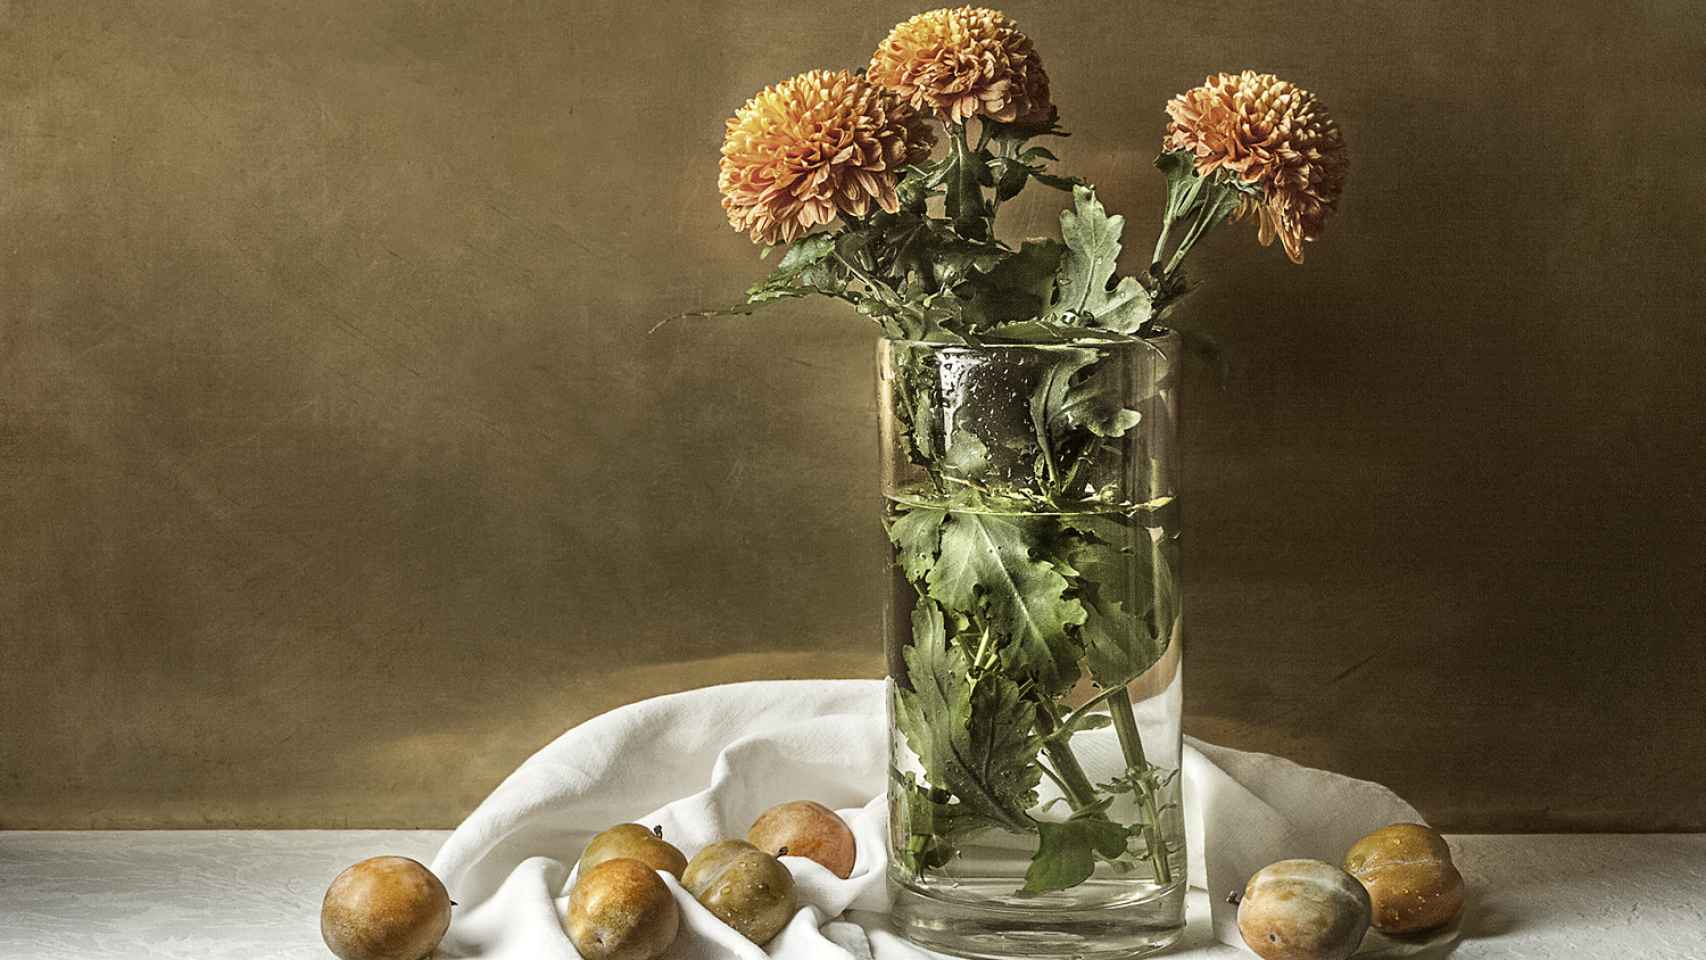 Detalle de jarrón de crisantemos y ciruelas, que evoca su referencia a los clásicos.